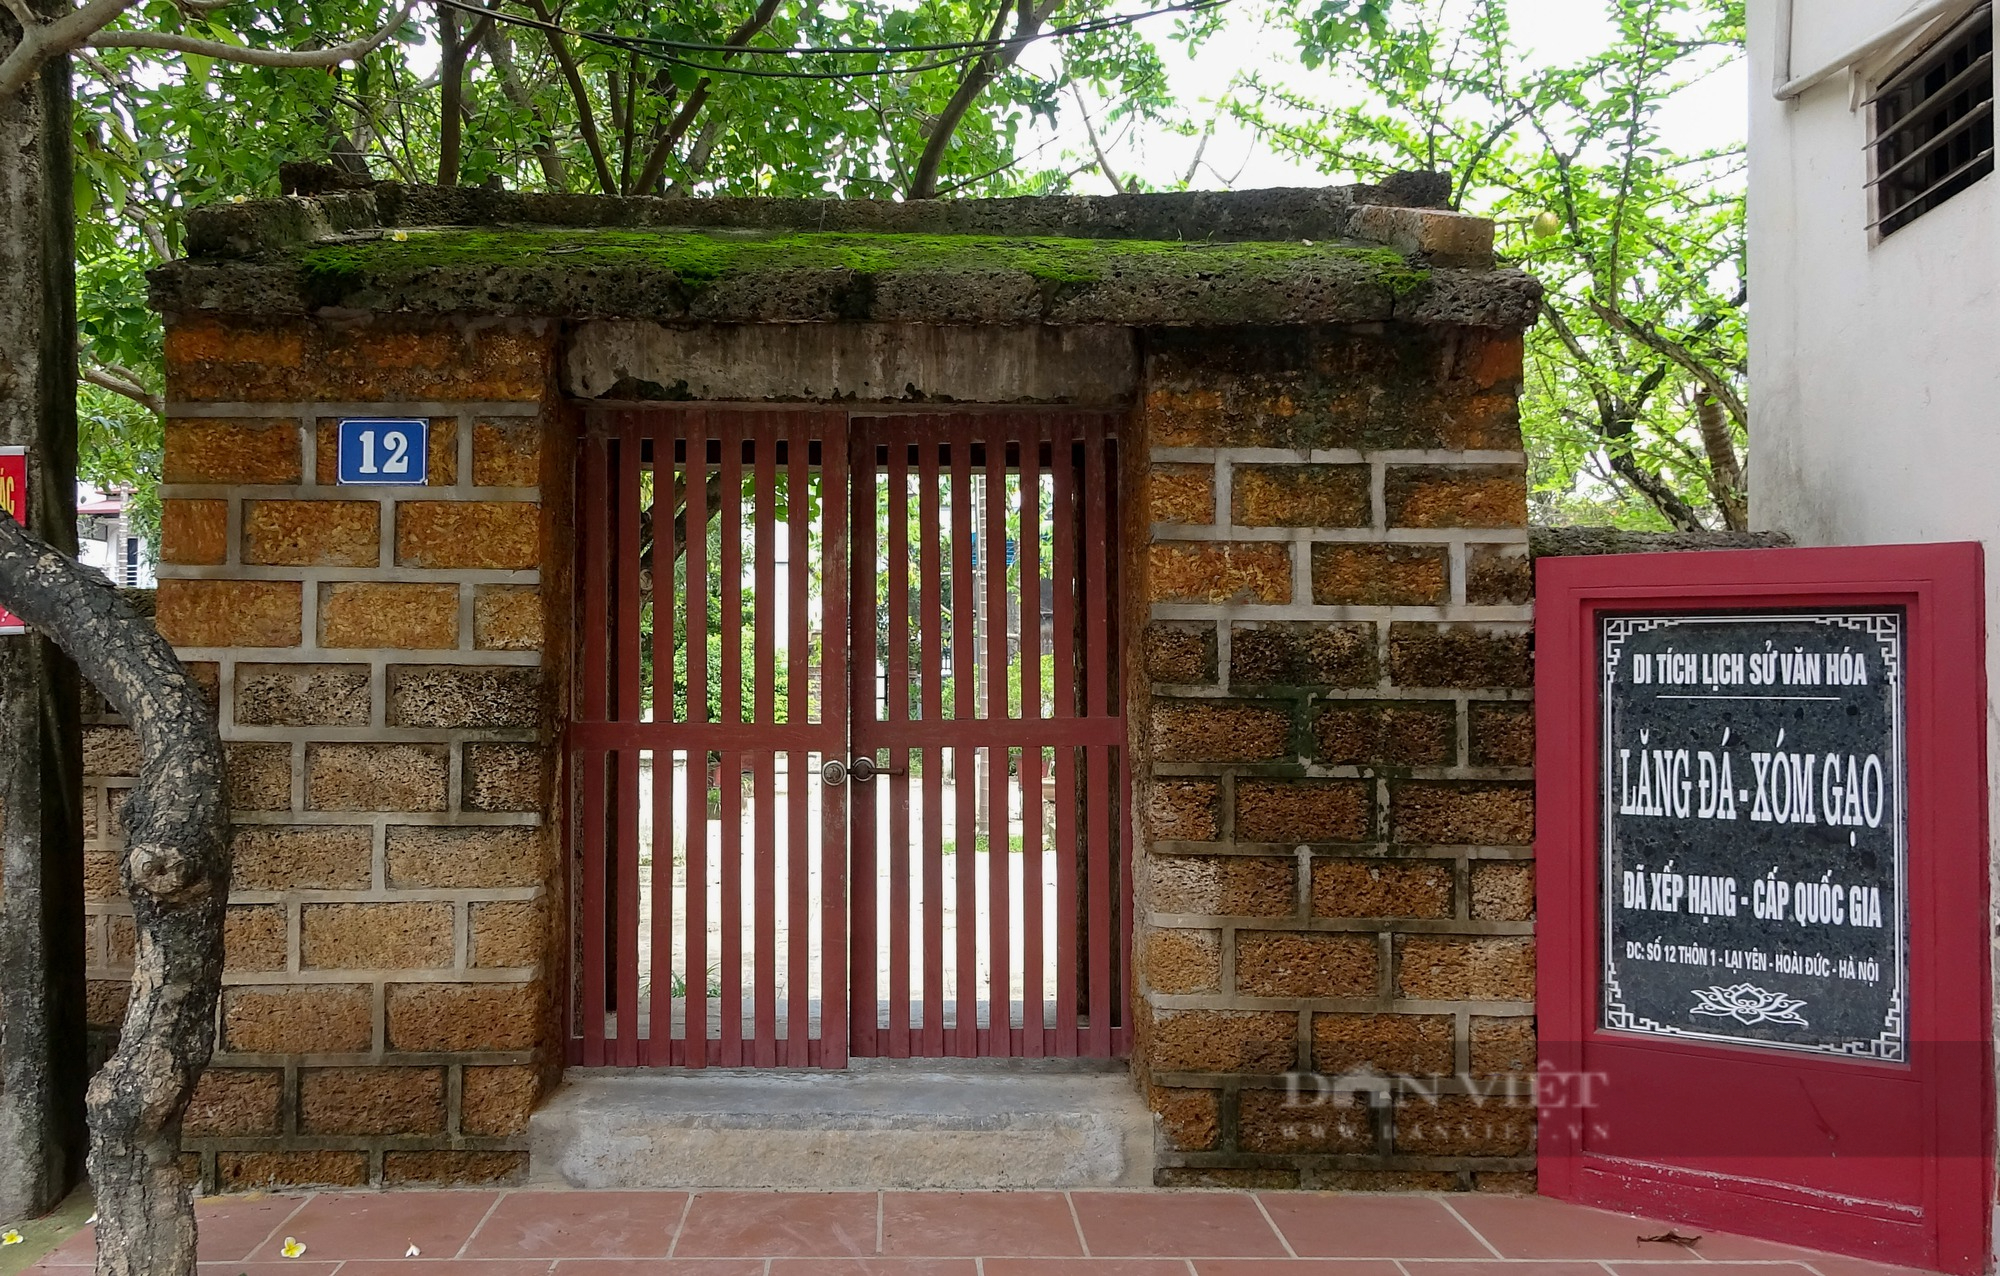 Lăng mộ cổ bằng đá xanh tồn tại gần 300 năm tuổi ở Hà Nội - Ảnh 12.